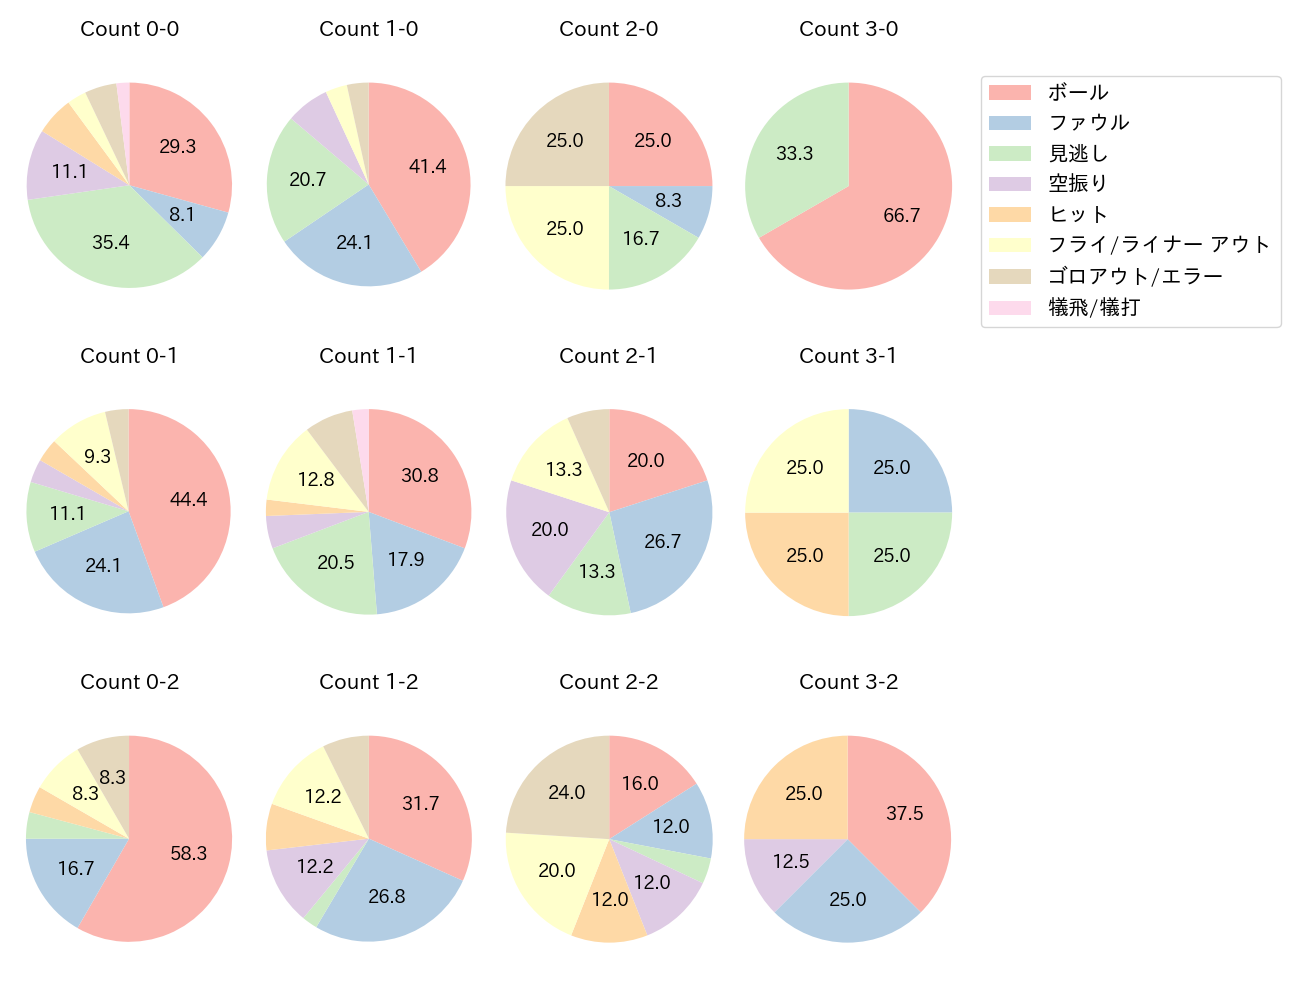 佐藤 都志也の球数分布(2022年5月)